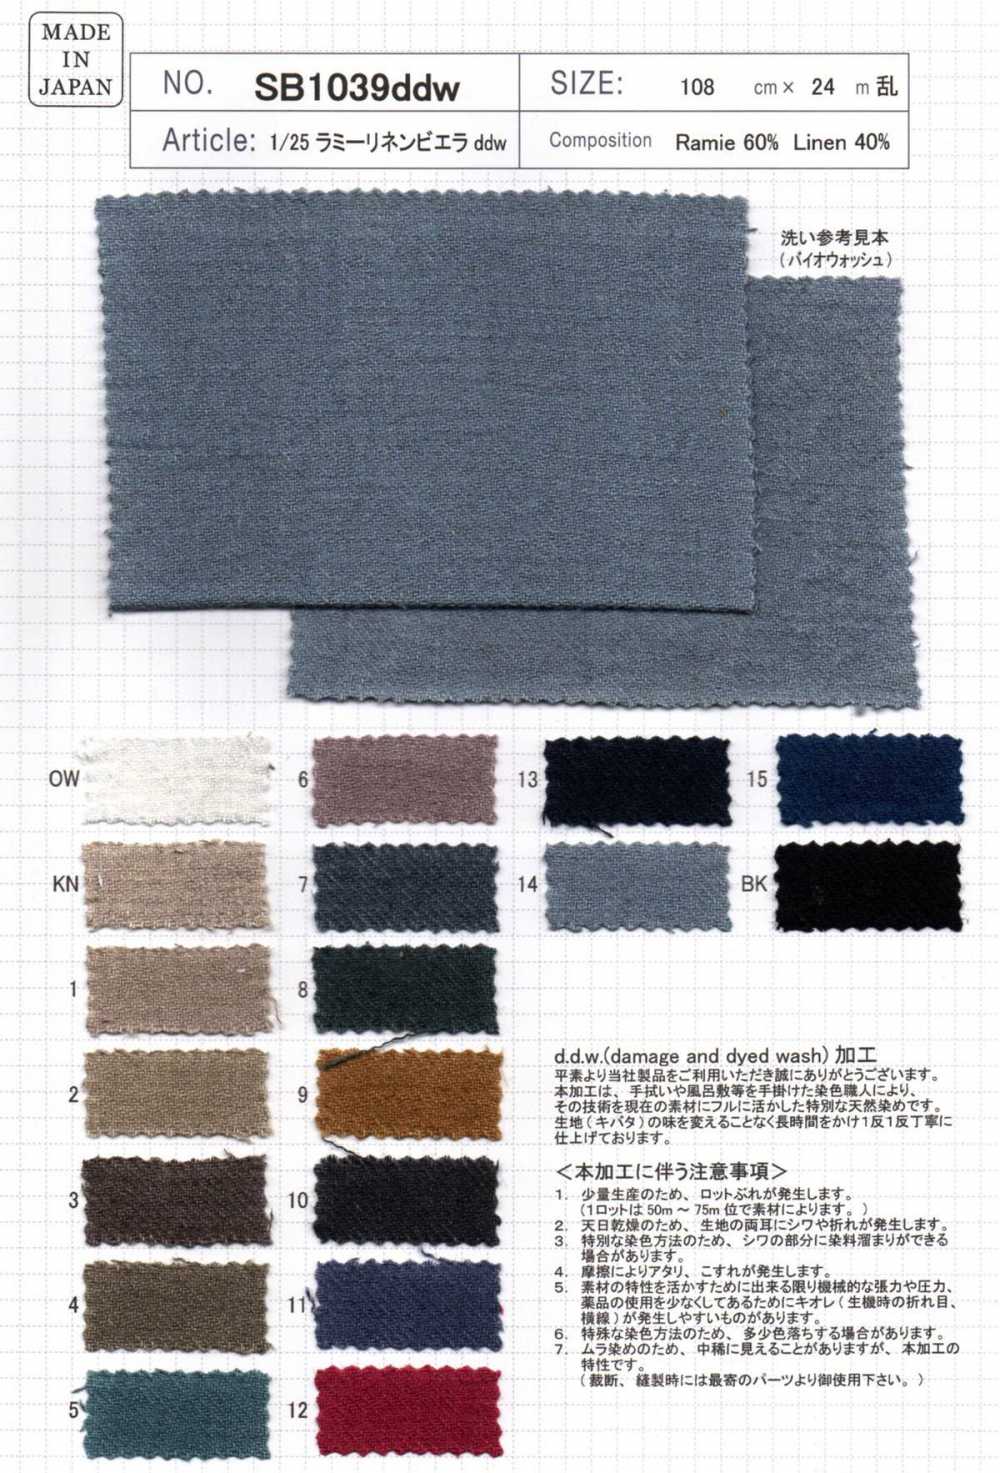 SB1039ddw 1/25 Lamy Lin Viyella Ddw[Fabrication De Textile] SHIBAYA